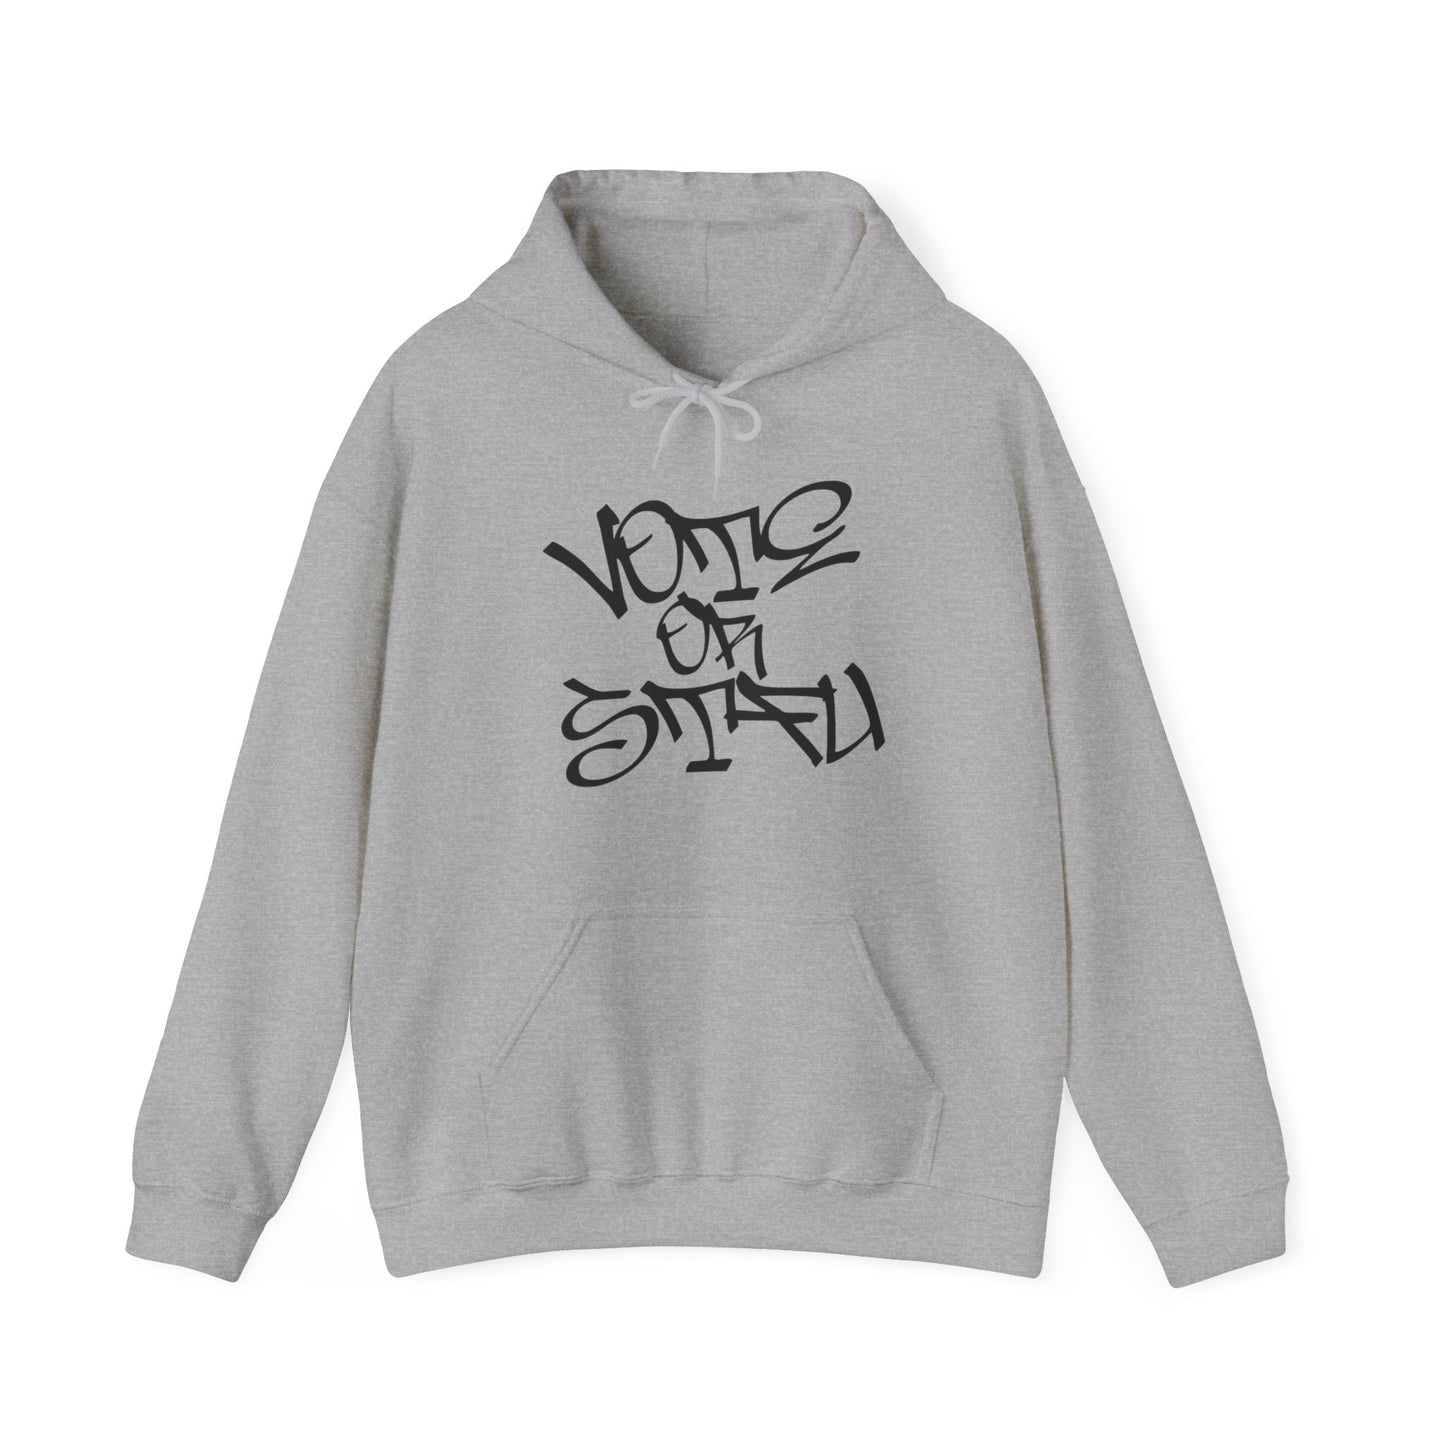 Graffiti Vote or STFU - Unisex Hoodie